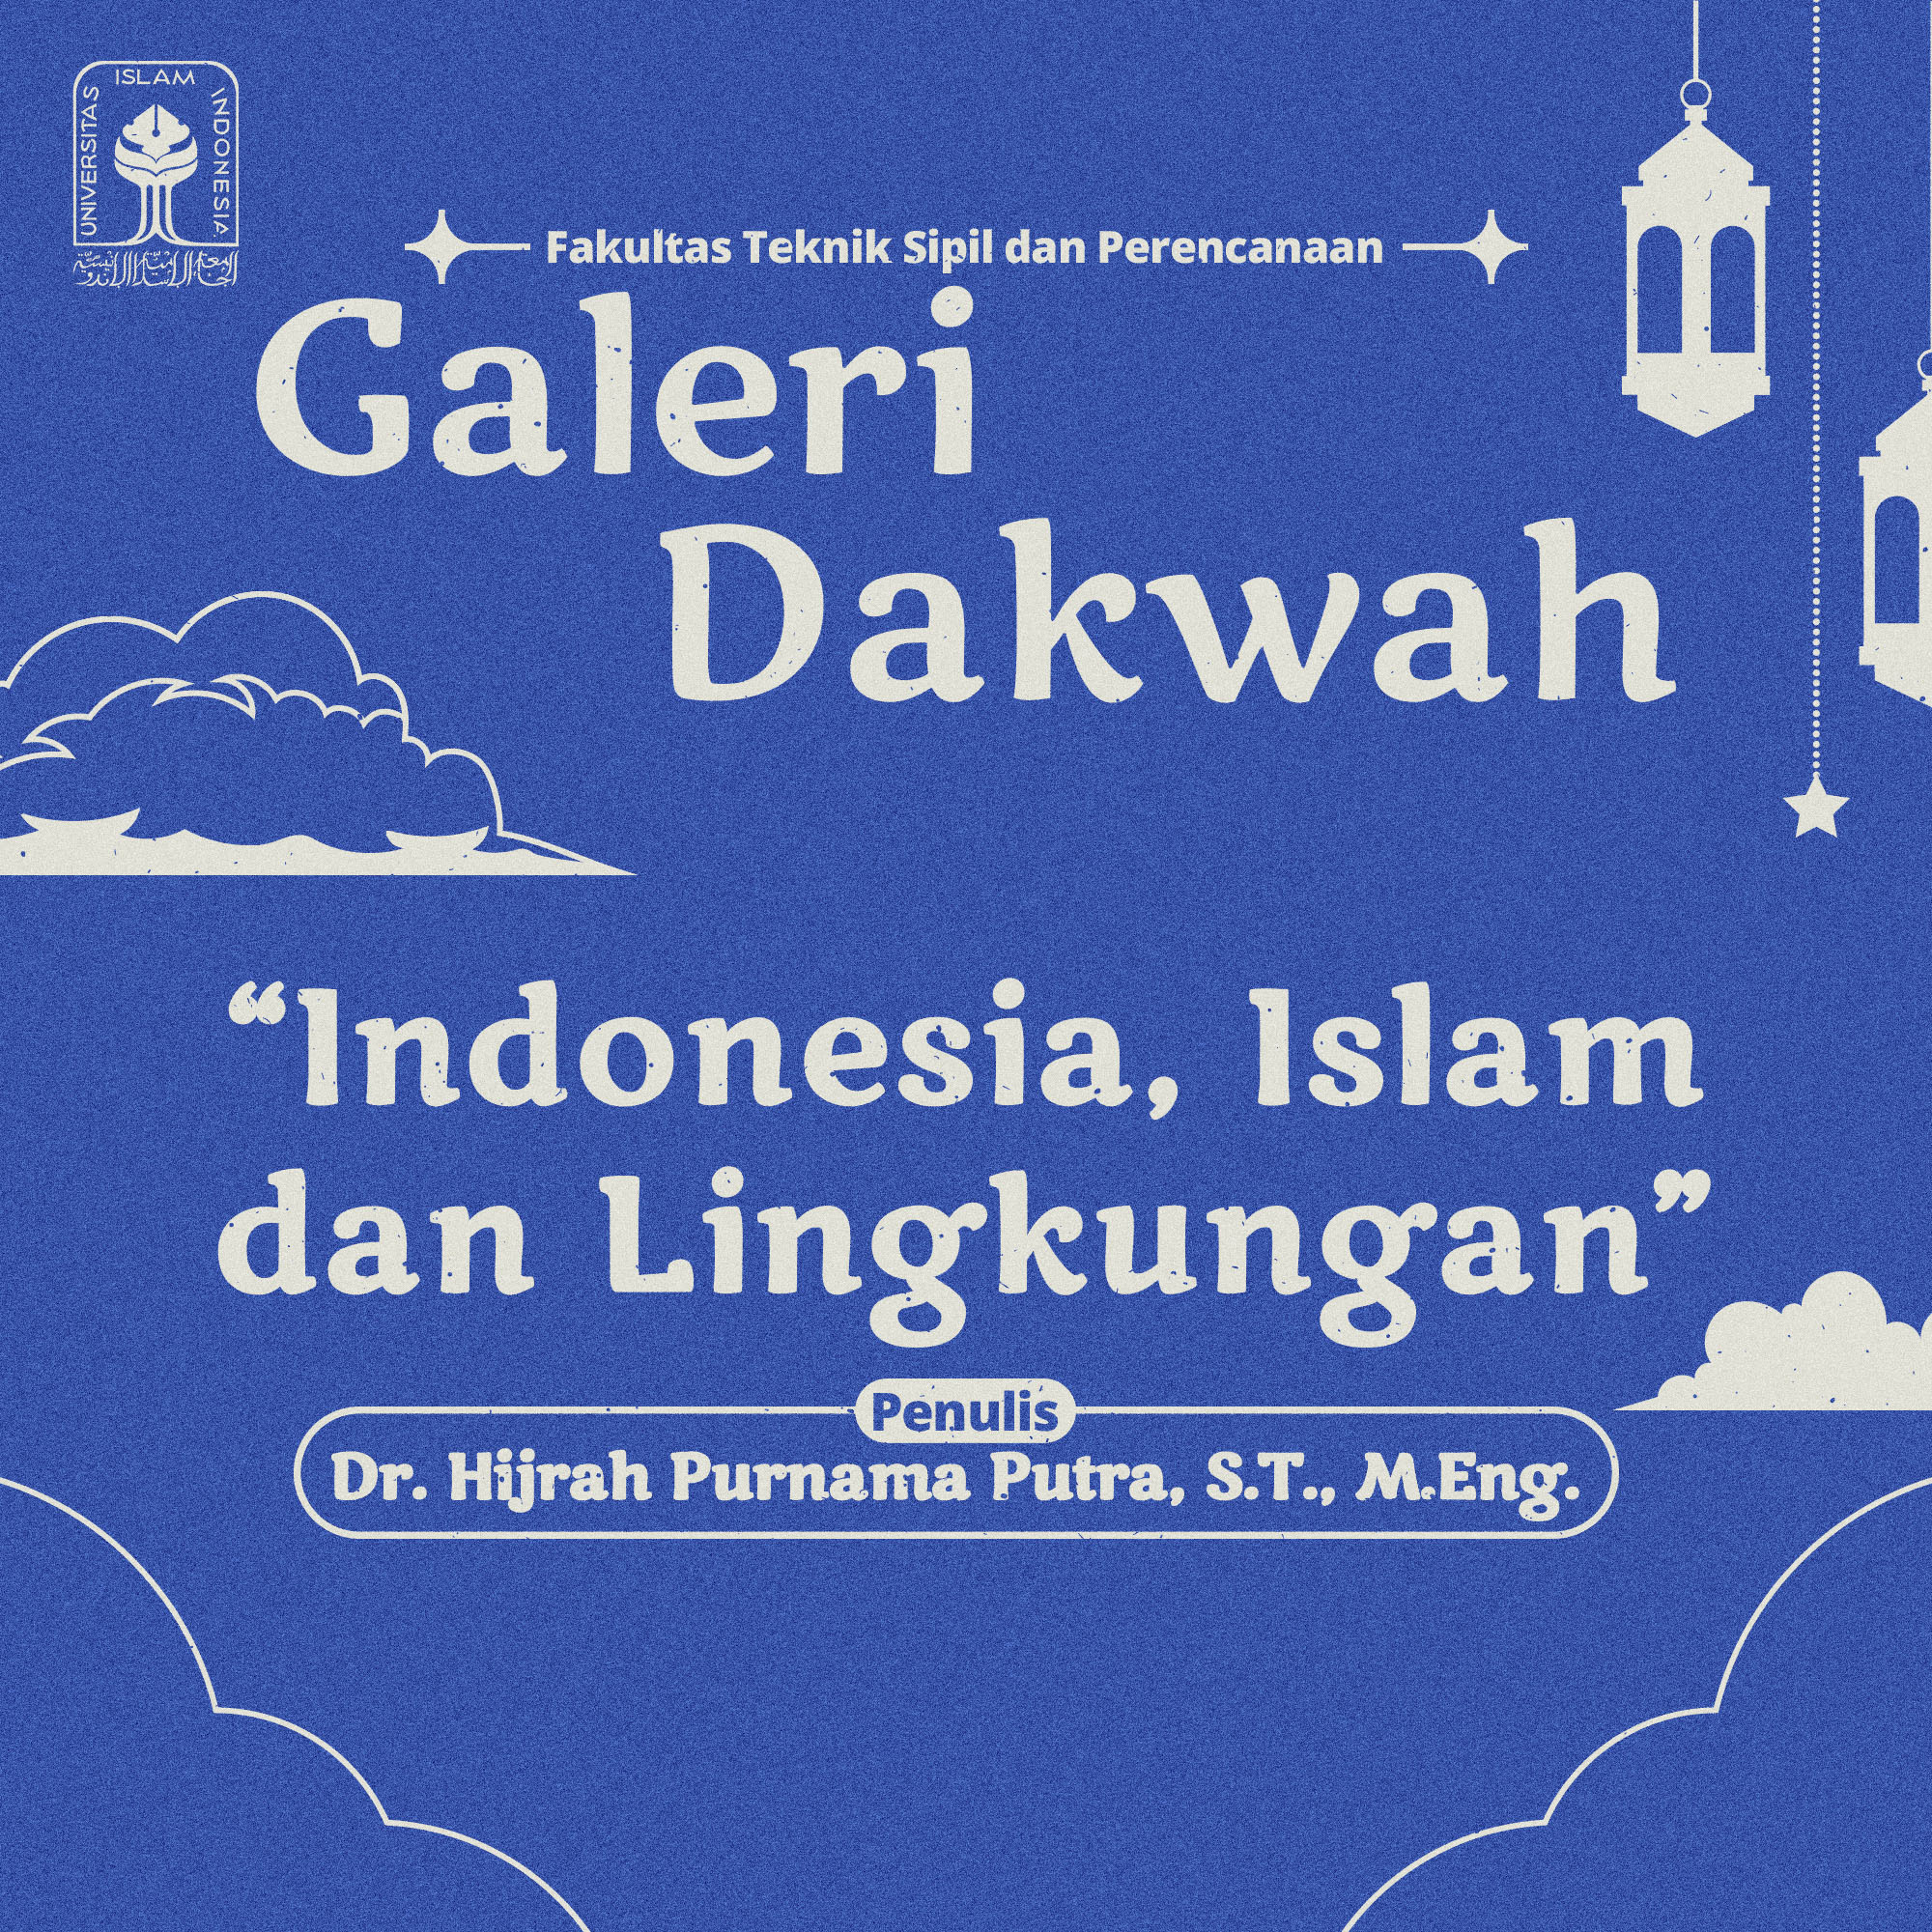 INDONESIA, ISLAM DAN LINGKUNGAN